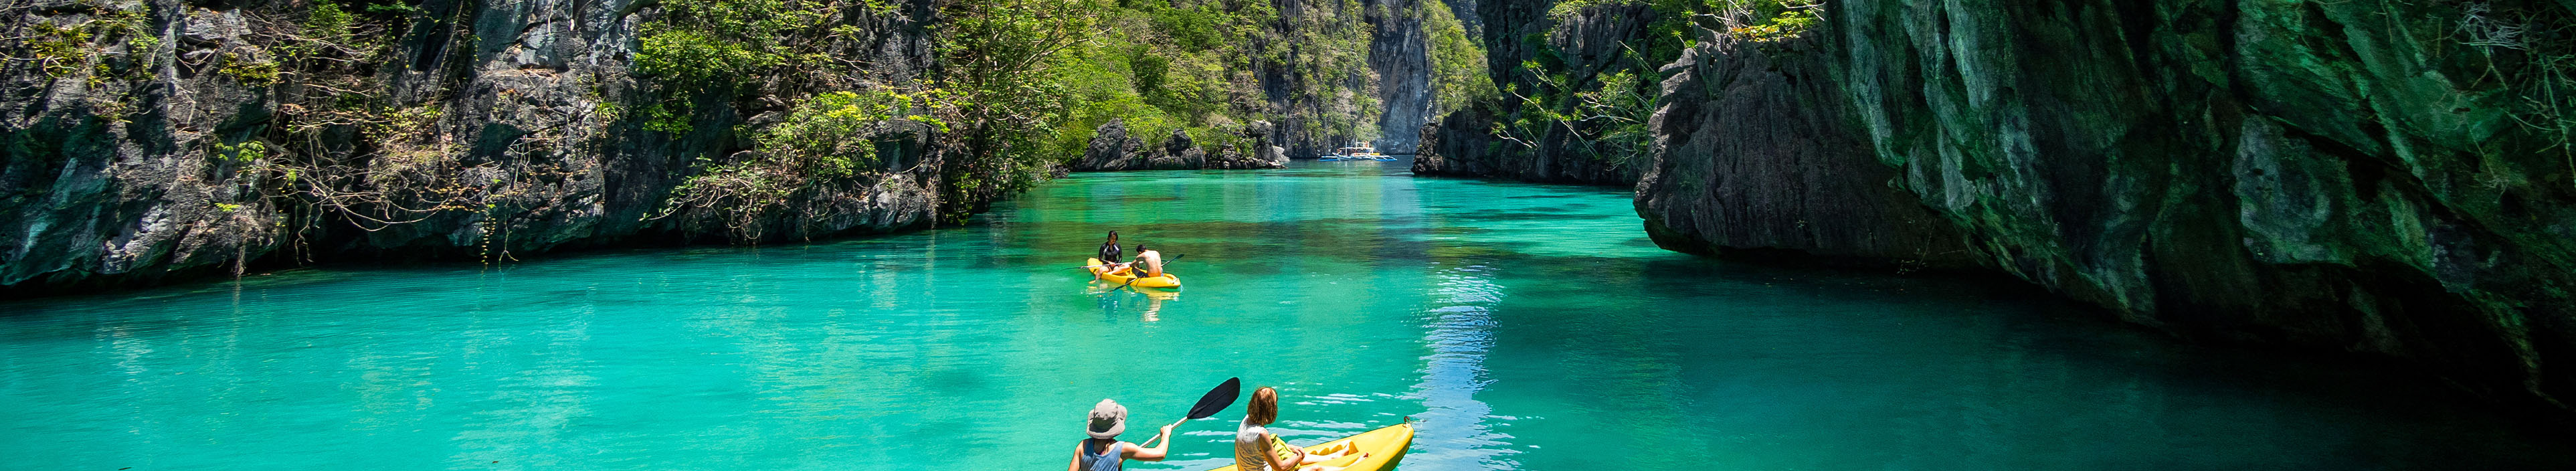 Touristen fahren Kajak in türkisblauem Wasser, umgeben von Felsen, Philippinen